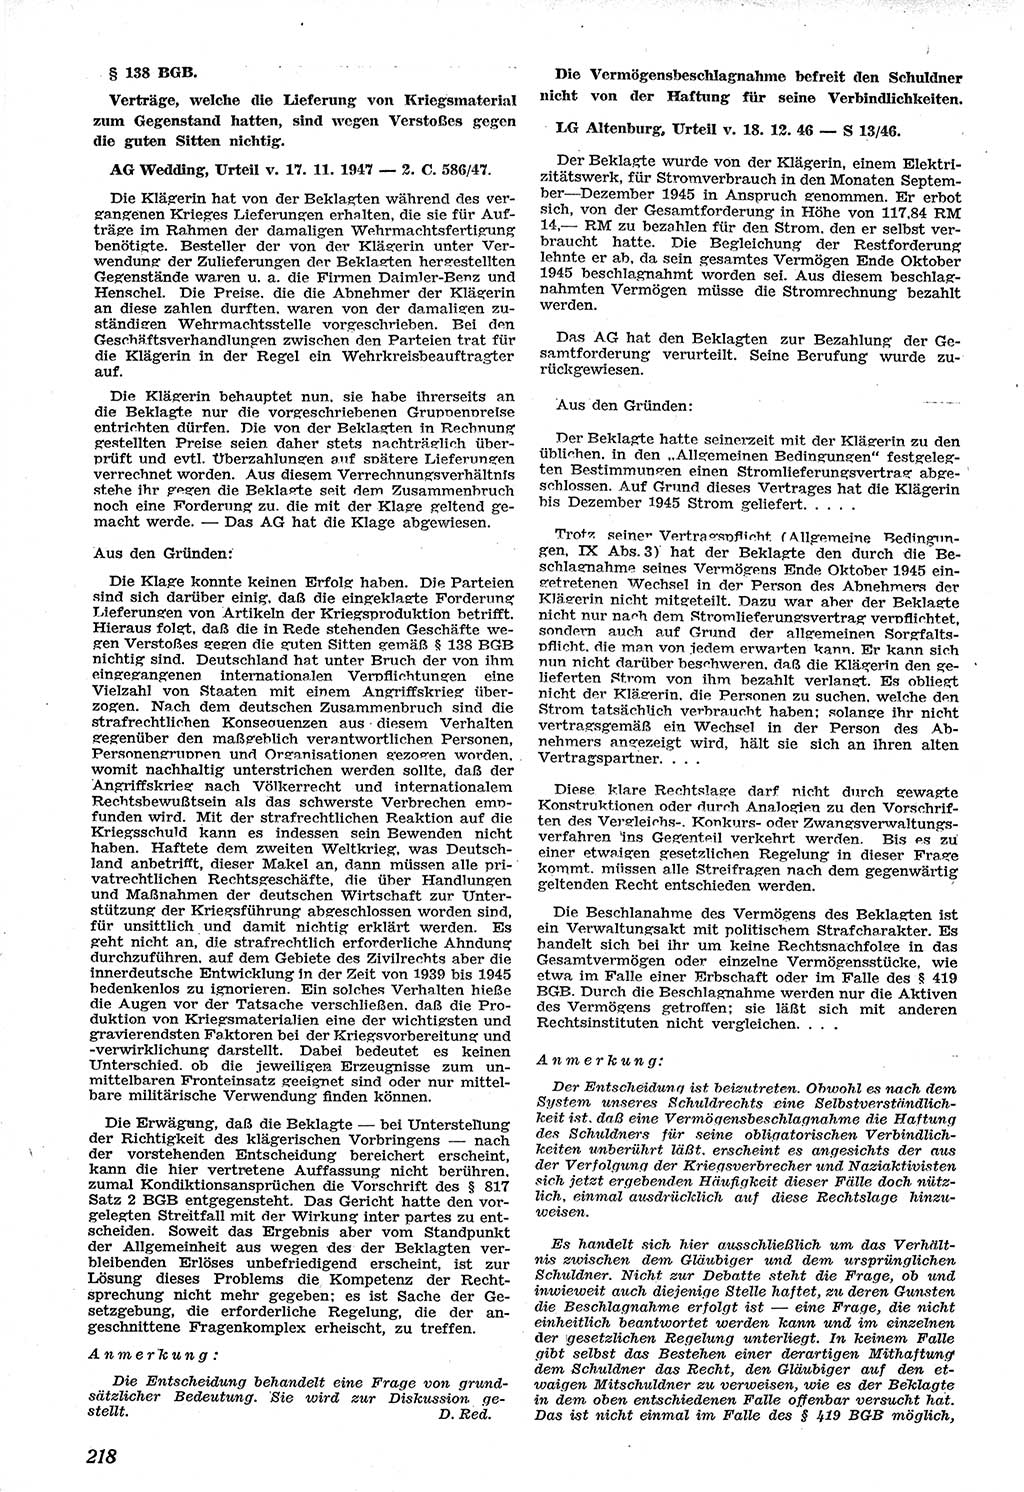 Neue Justiz (NJ), Zeitschrift für Recht und Rechtswissenschaft [Sowjetische Besatzungszone (SBZ) Deutschland], 1. Jahrgang 1947, Seite 218 (NJ SBZ Dtl. 1947, S. 218)